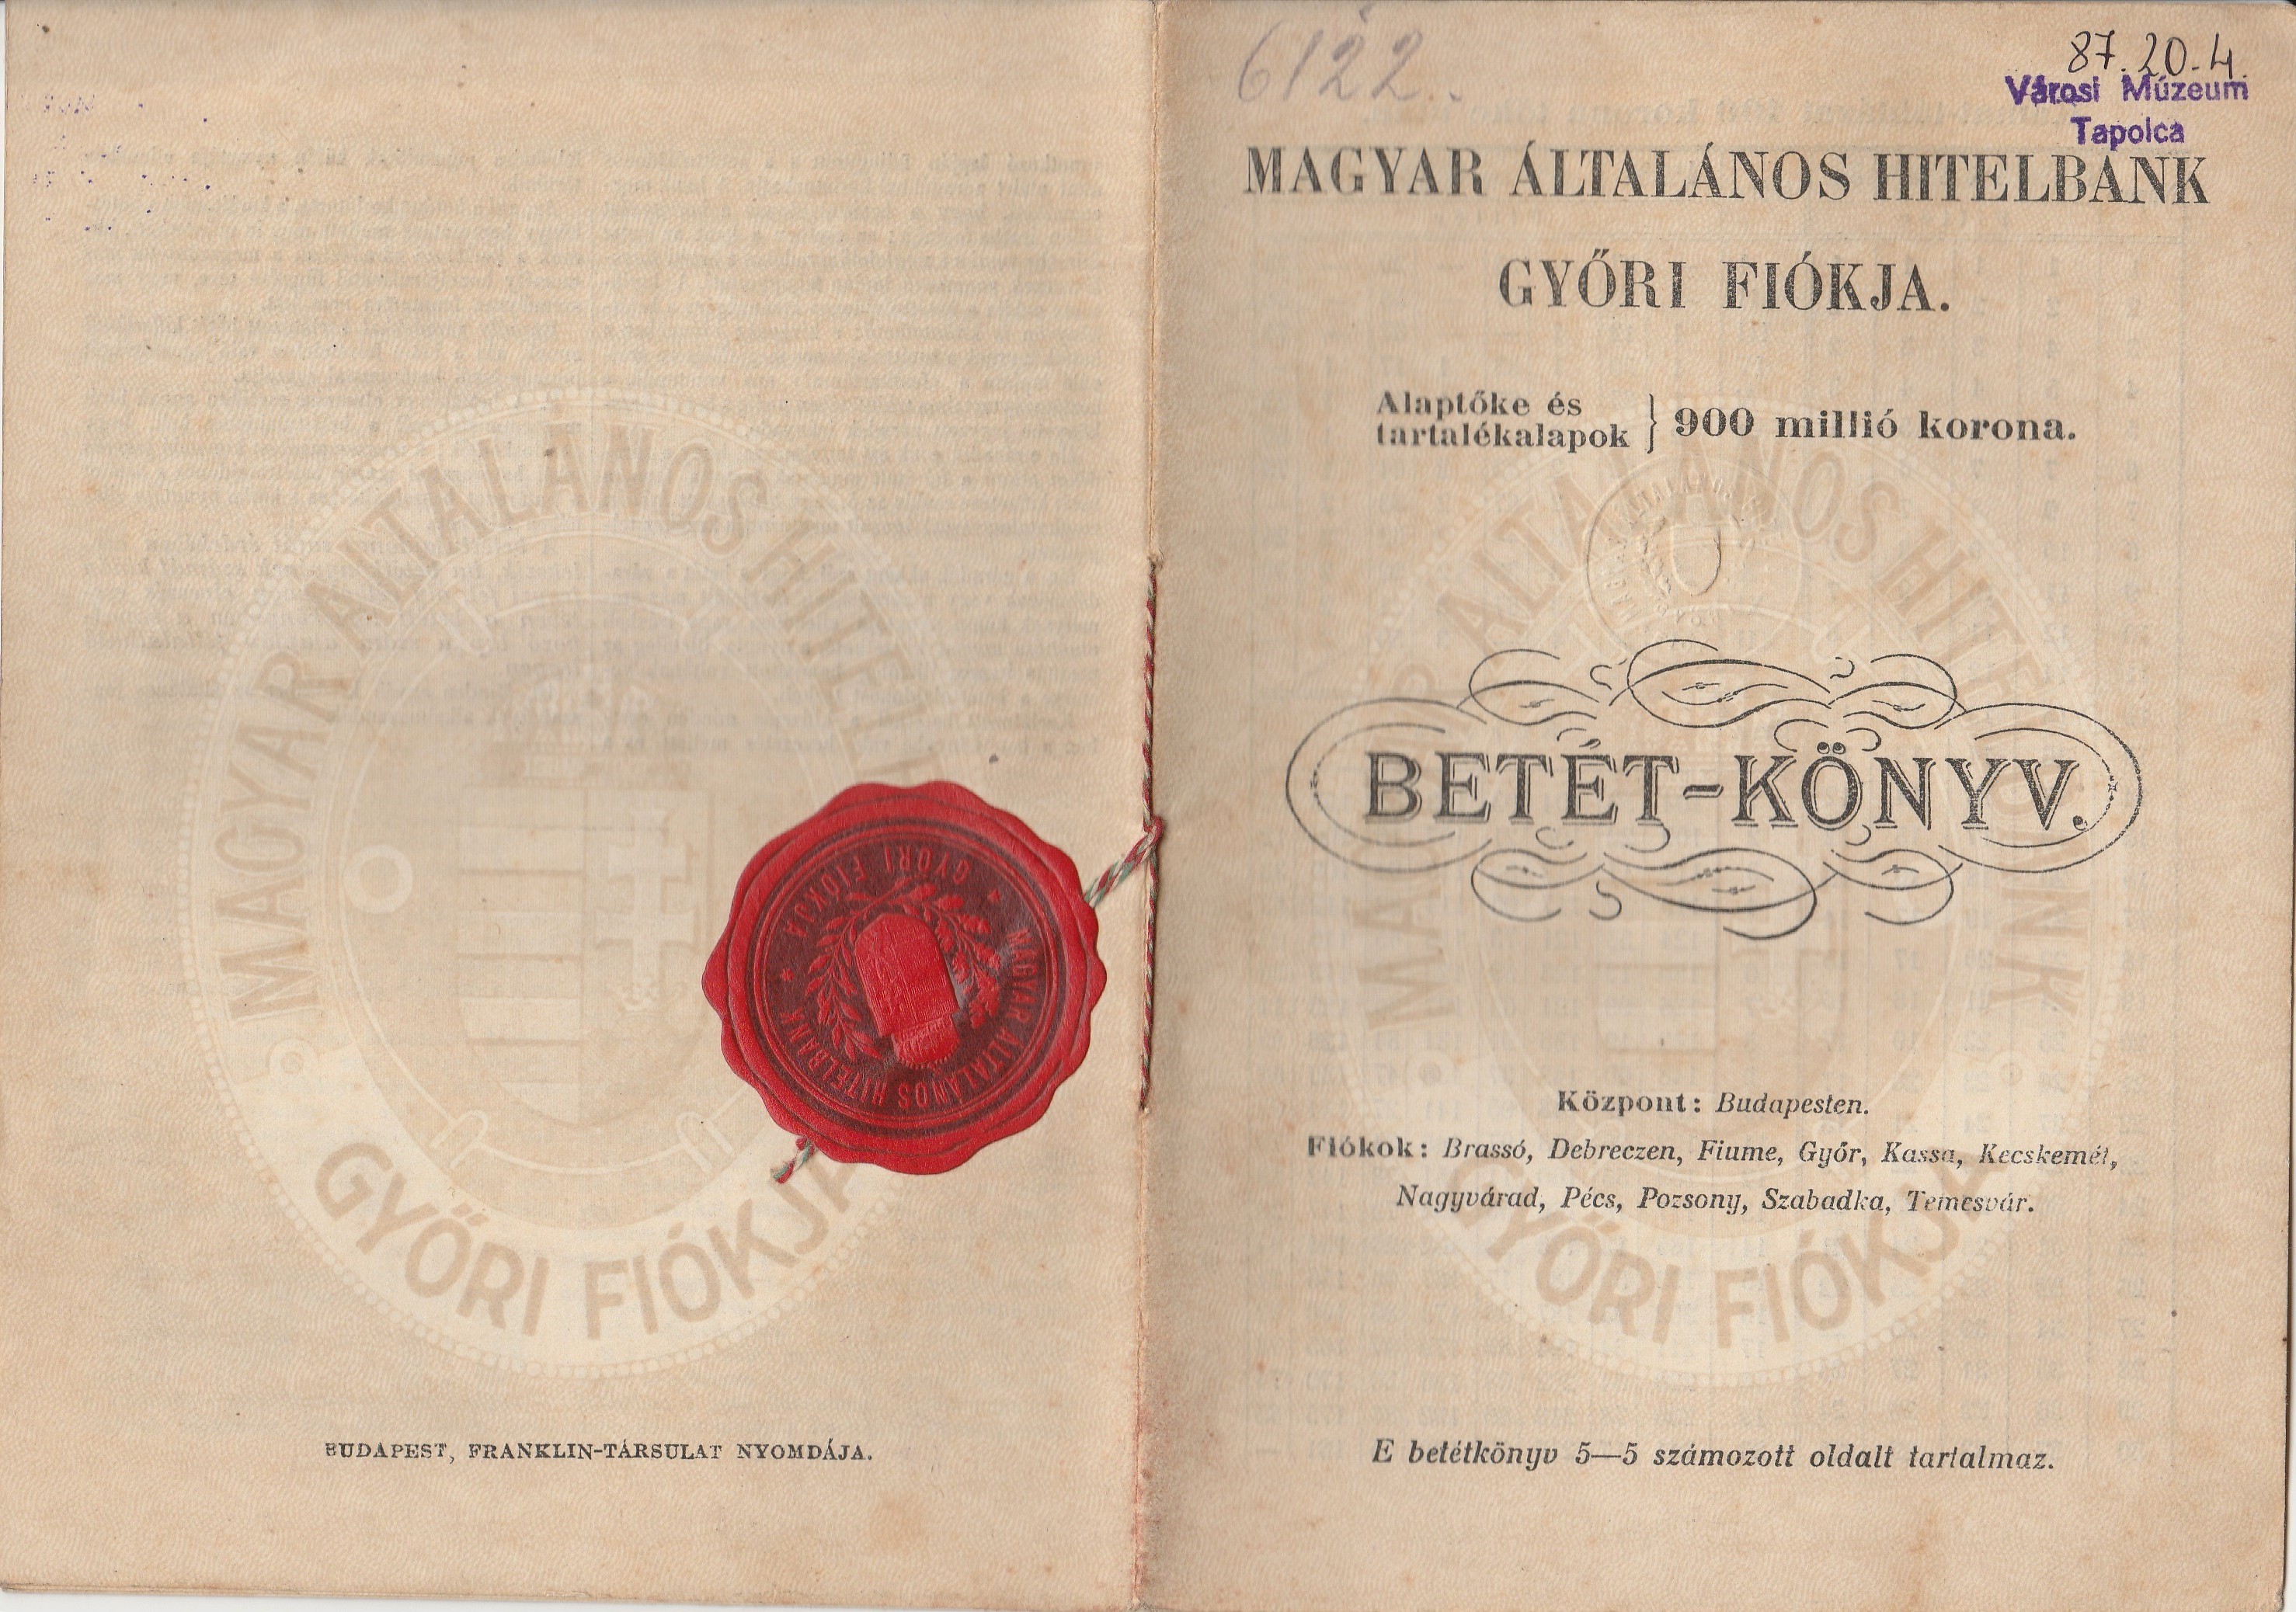 Magyar Általános Hitelbank győri fiókjának betétkönyve (Tapolcai Városi Múzeum CC BY-NC-SA)